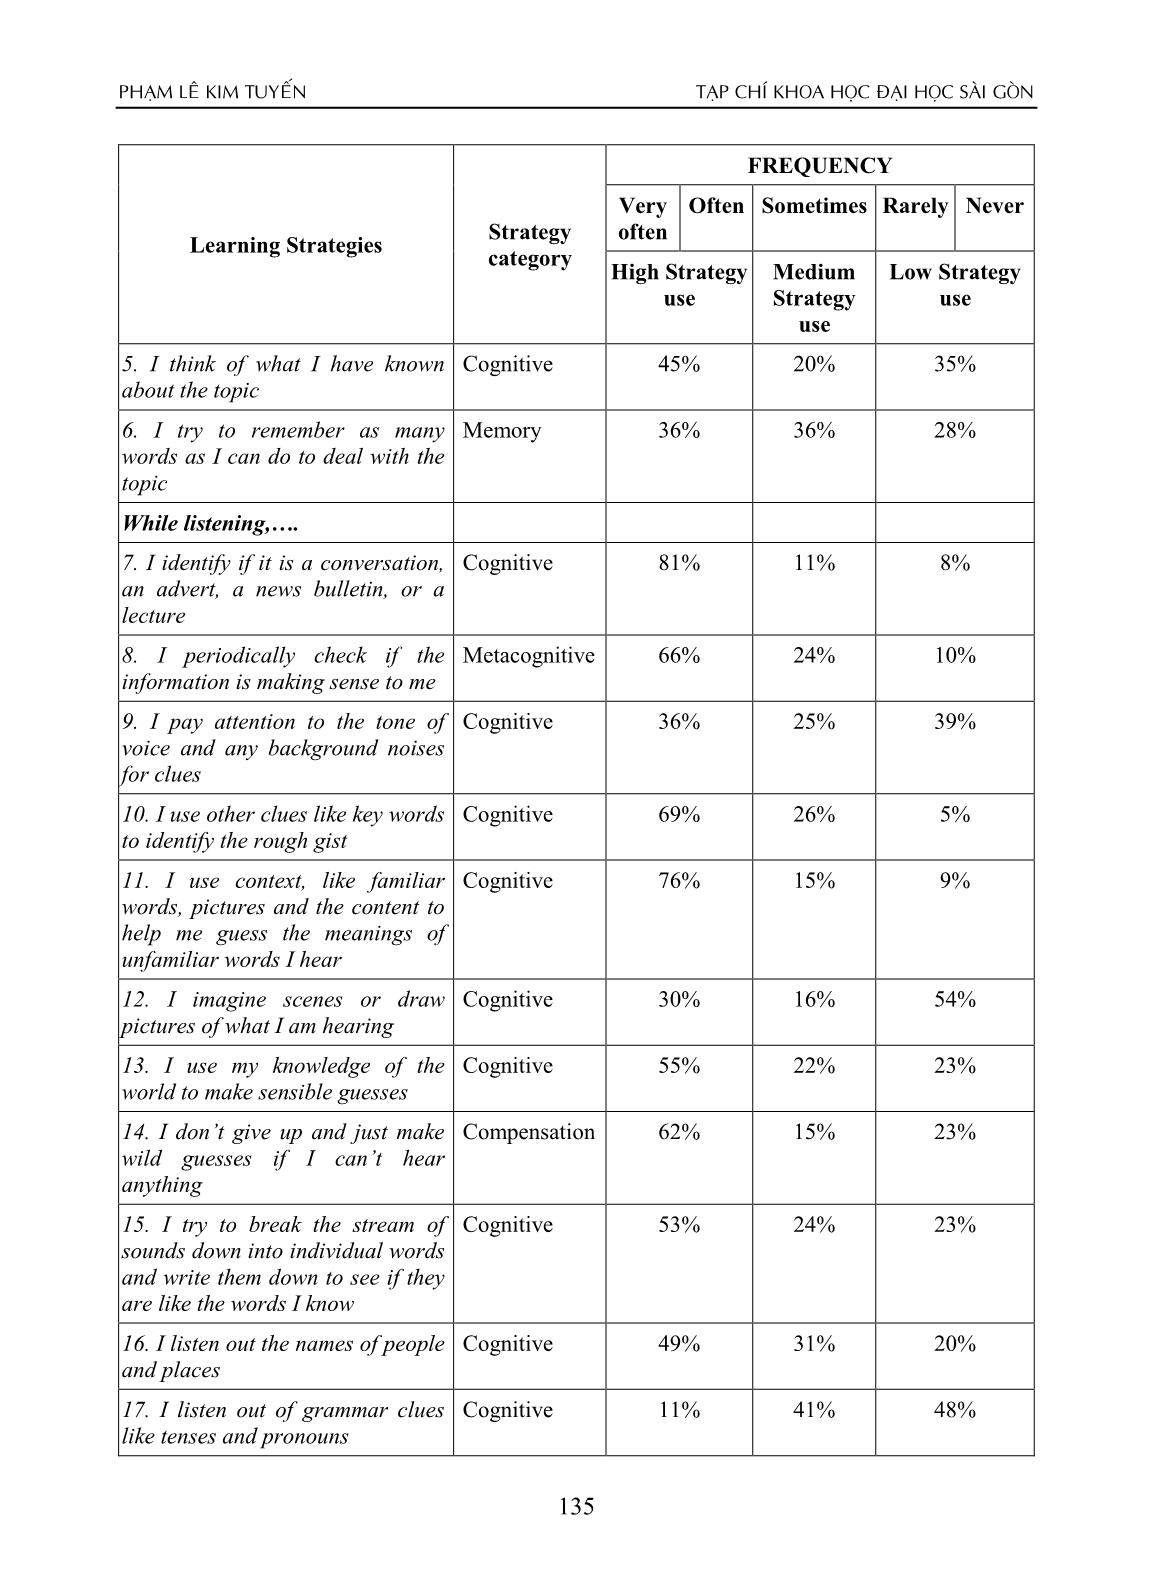 Khảo sát về tần suất sử dụng các chiến lược học tập của sinh viên năm hai chuyên ngữ trong việc học các kỹ năng nghe nói tiếng Anh ở Trường Đại học Sài Gòn trang 6